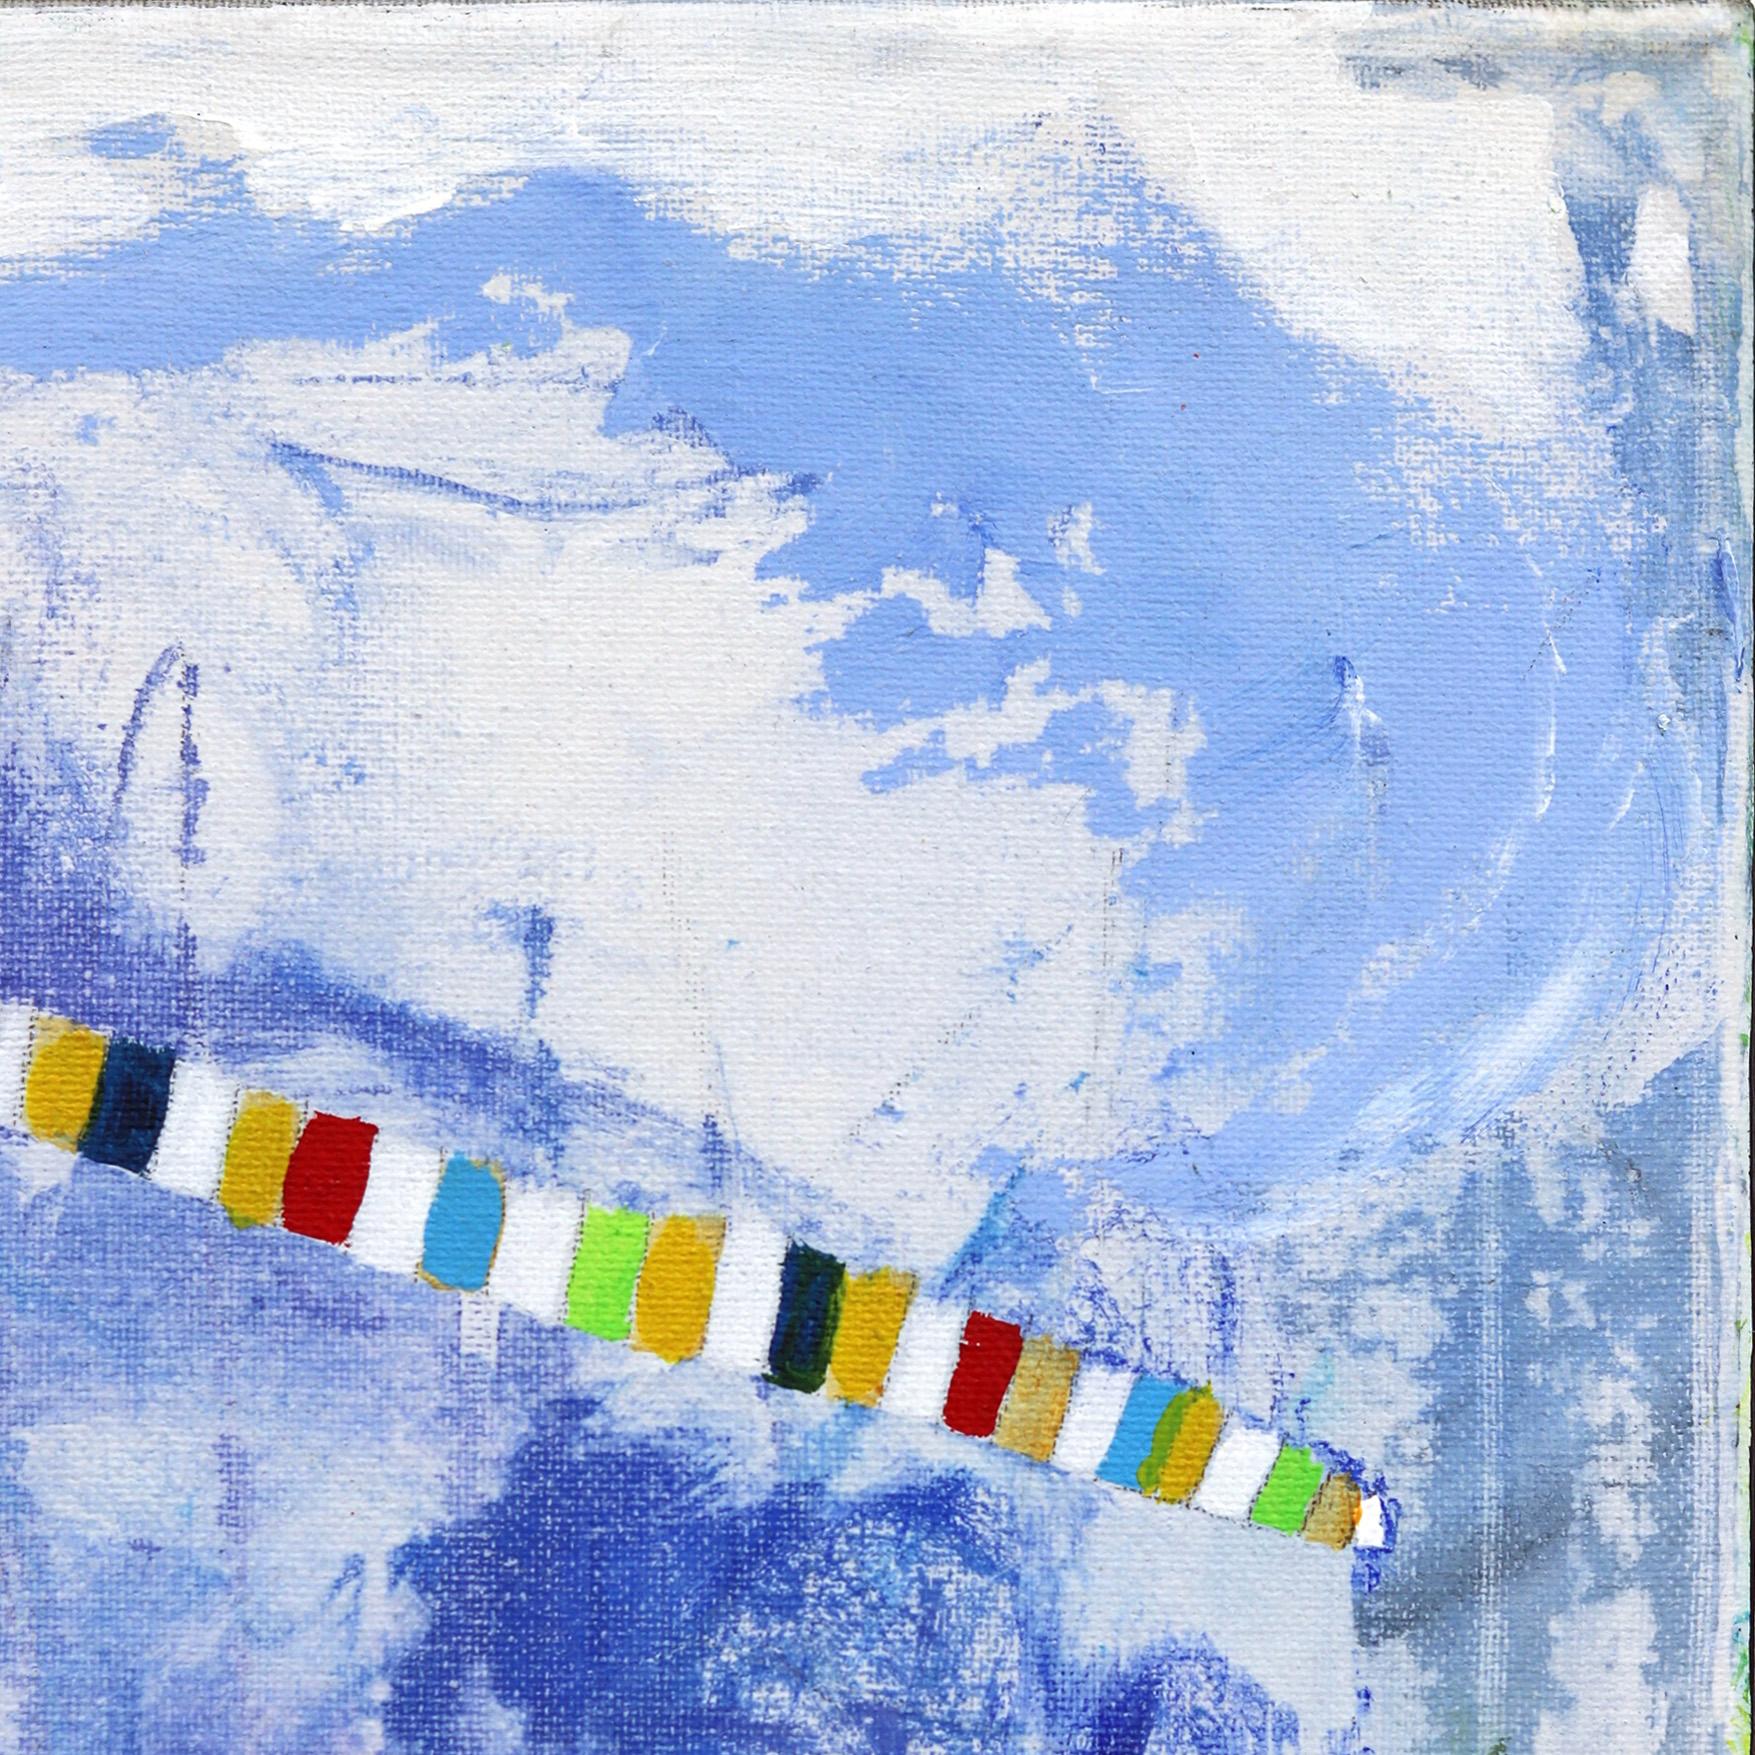 Jodi Fuchs' abstrakte expressionistische Kunstwerke strahlen eine unbestreitbare Energie aus und bestechen durch ihre leuchtenden Farben und dynamischen Pinselstriche. Beeinflusst von den metaphysischen Aspekten des Lebens, spricht Fuchs' Werk von